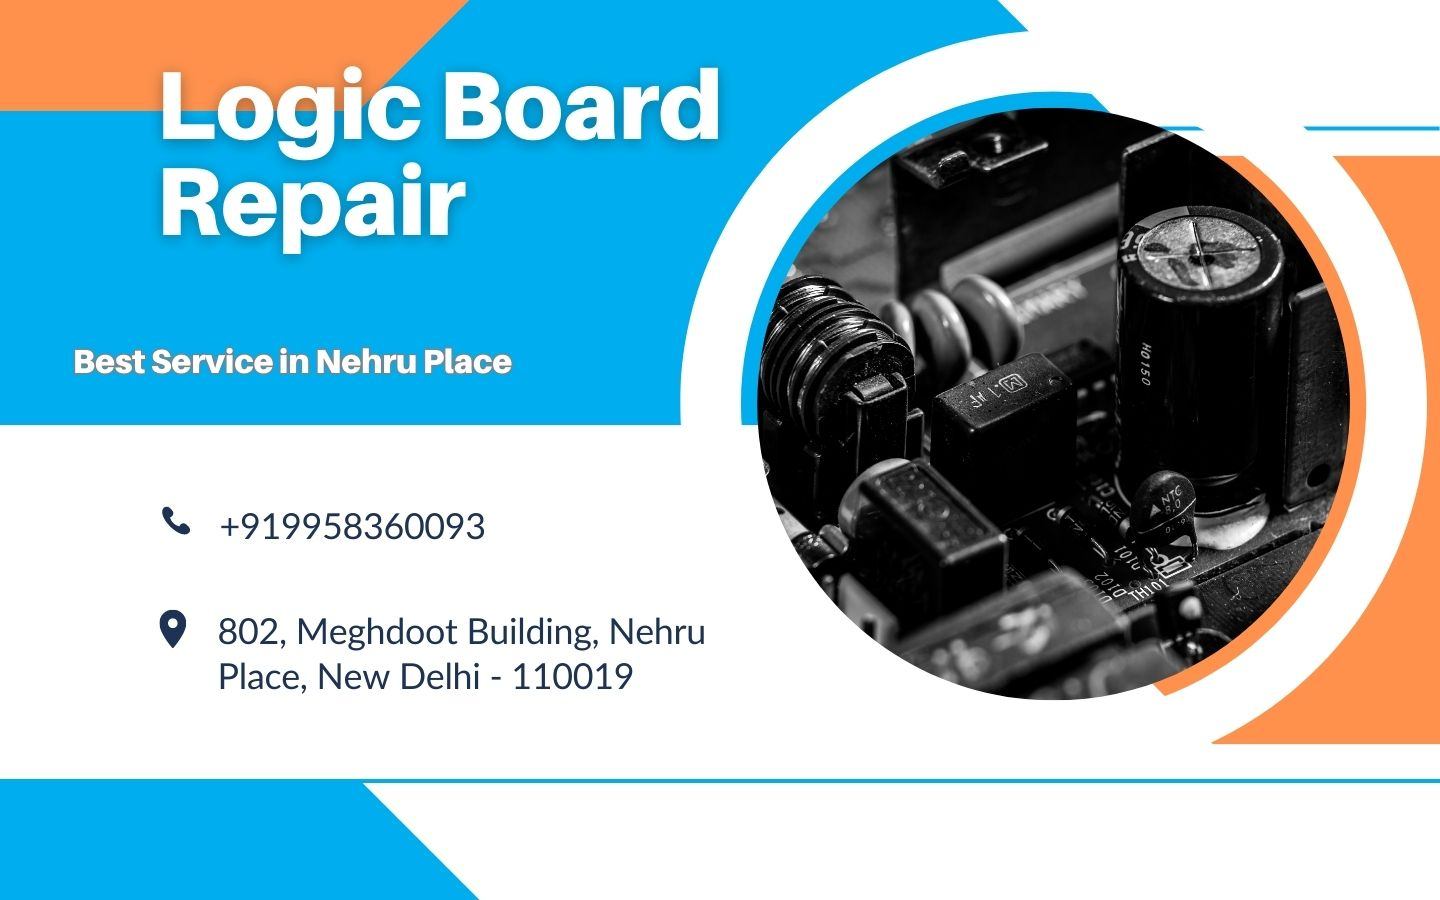 MacBook Logic Board repair services in Nehru Place